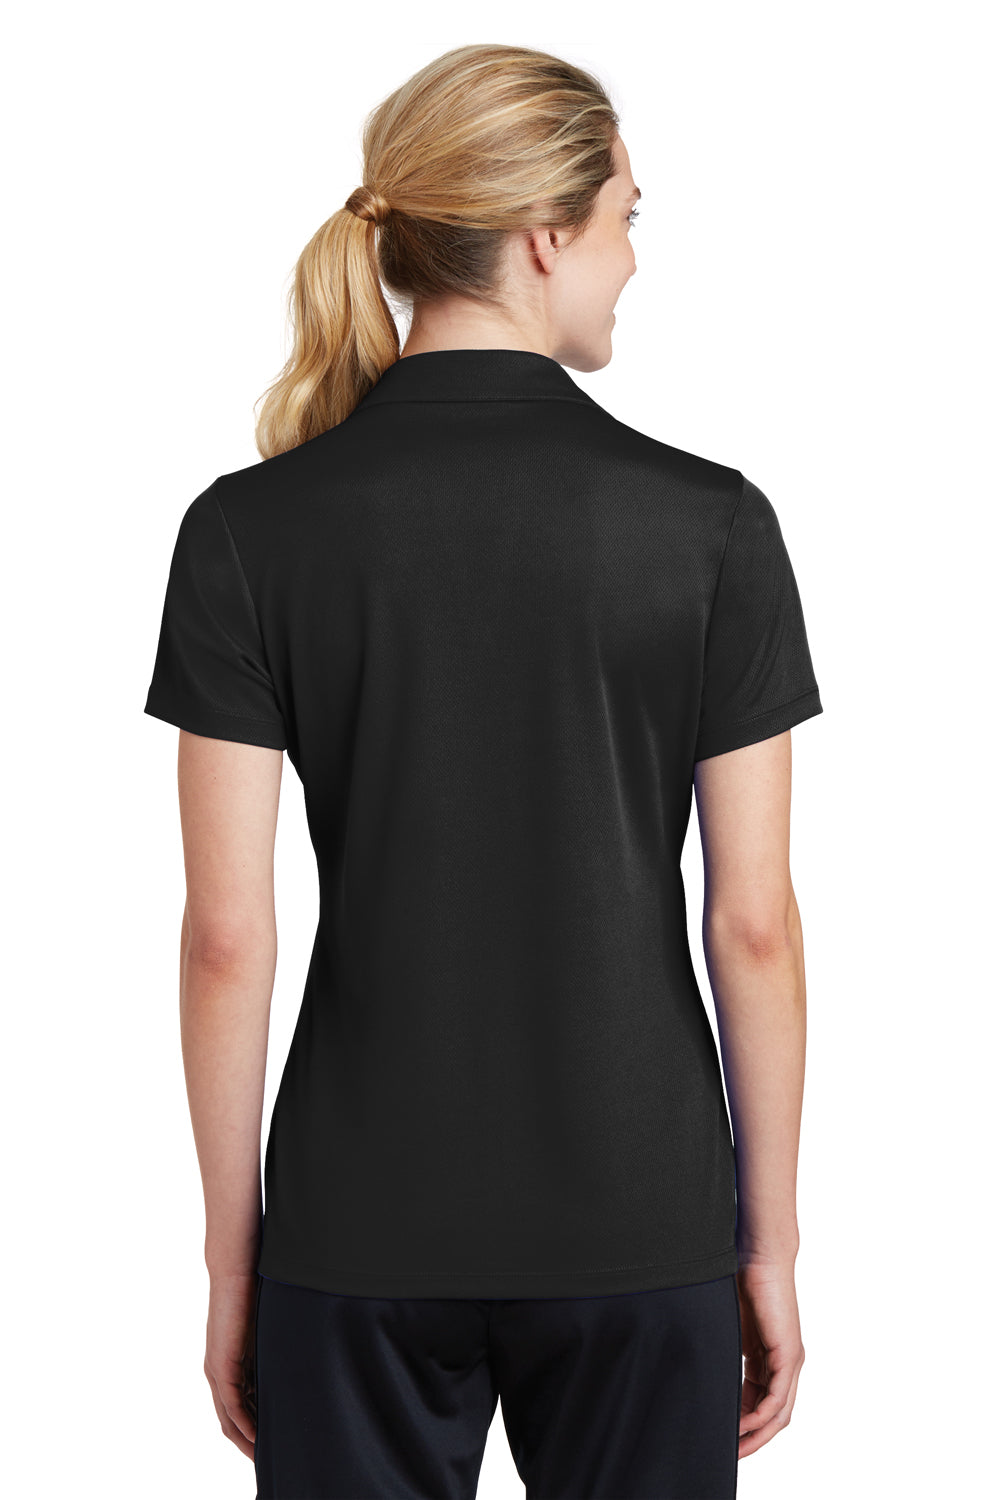 Sport-Tek LST640 Womens RacerMesh Moisture Wicking Short Sleeve Polo Shirt Black Back